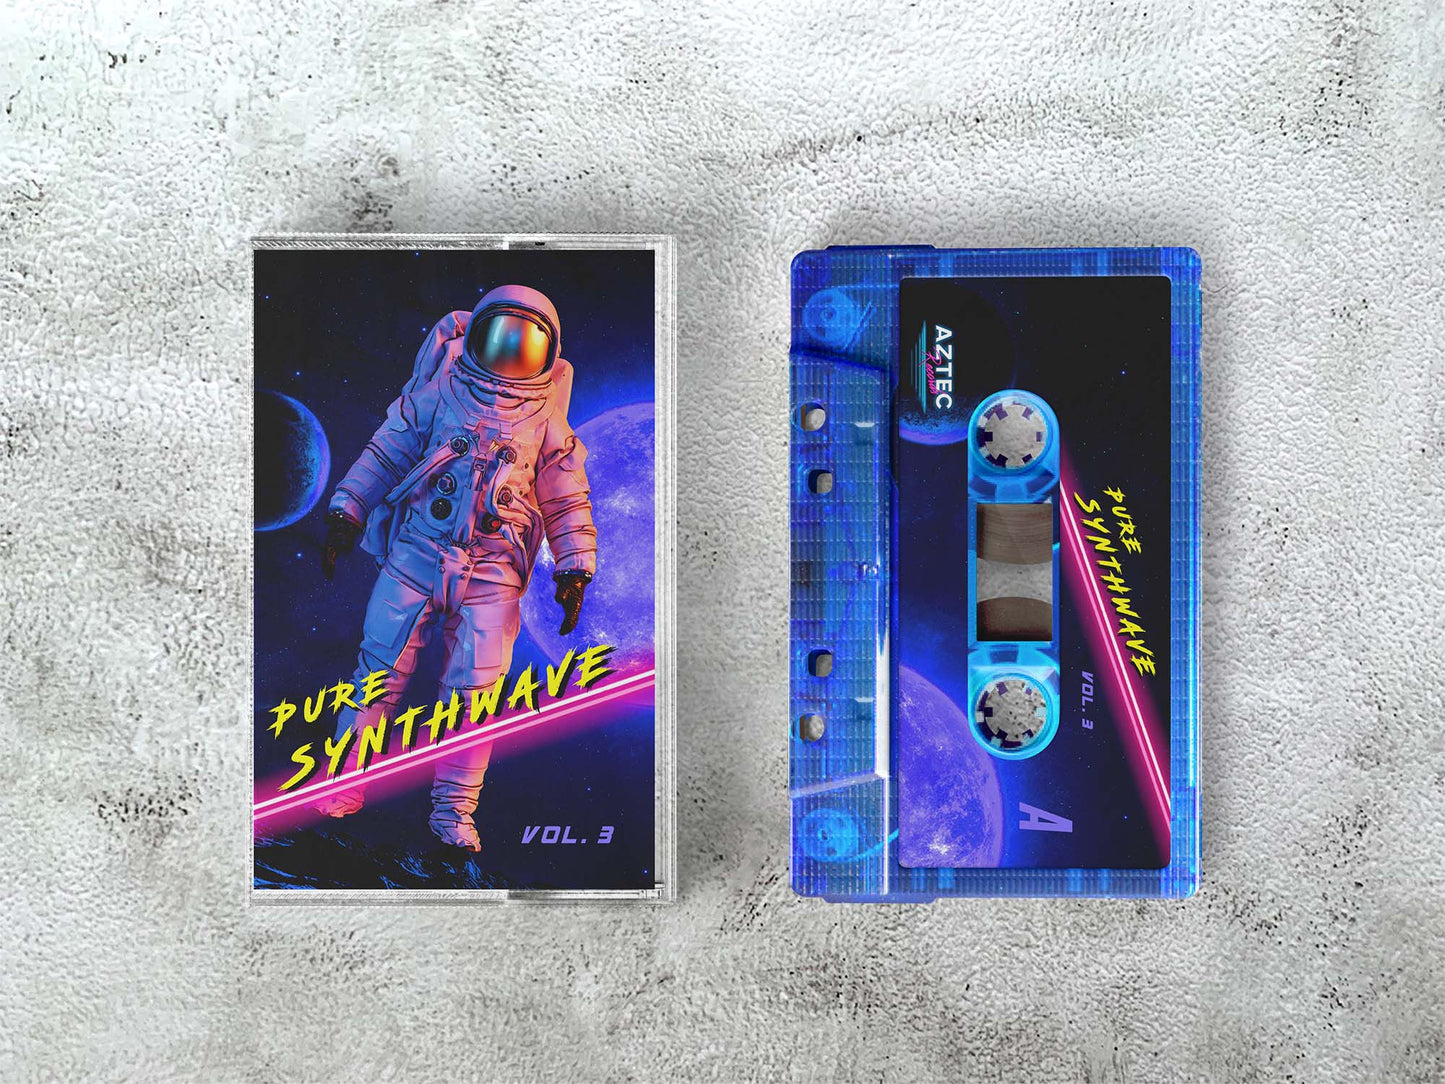 Pure Synthwave, Vol. 3 - TRANSPARENT BLUE Cassette